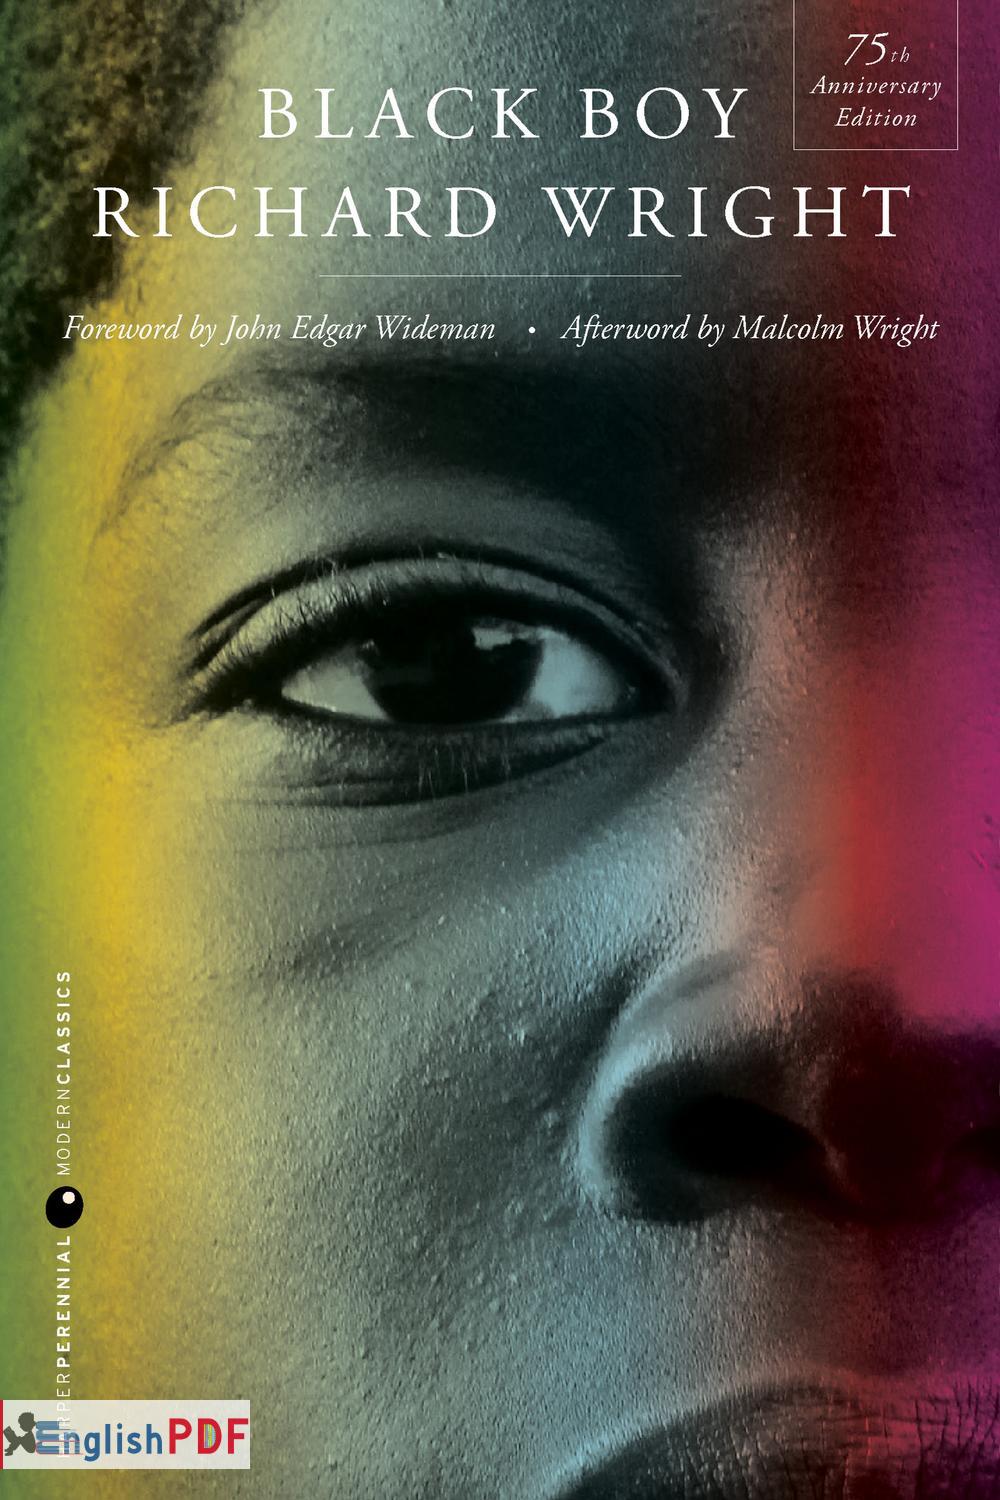 Black Boy Richard Wright Pdf Download - Englishpdf